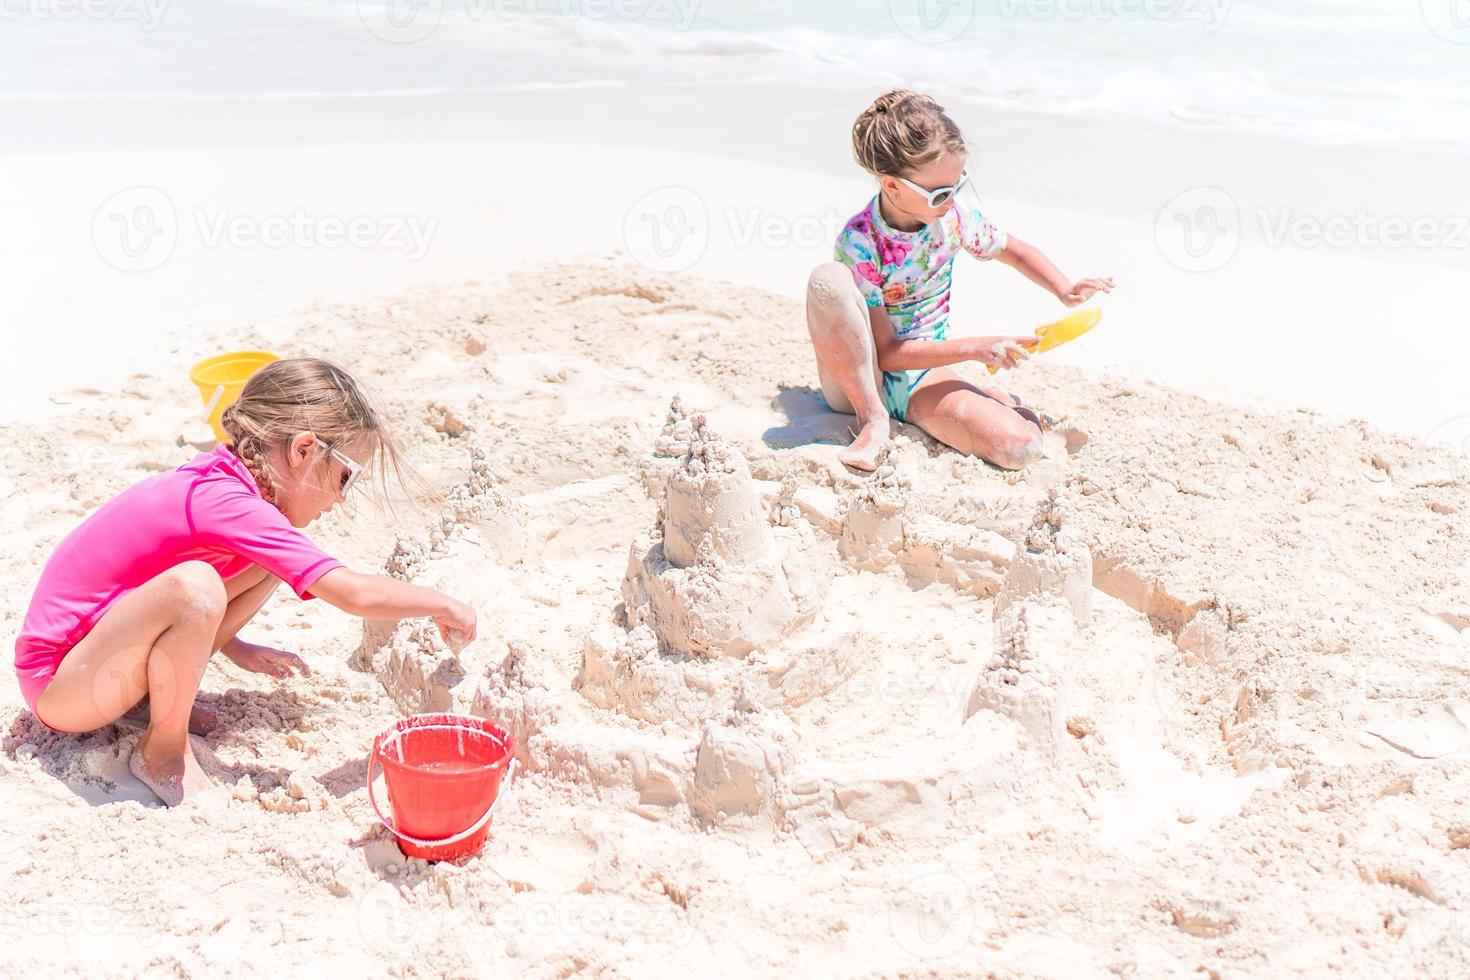 duas meninas felizes se divertem muito na praia tropical brincando juntas foto